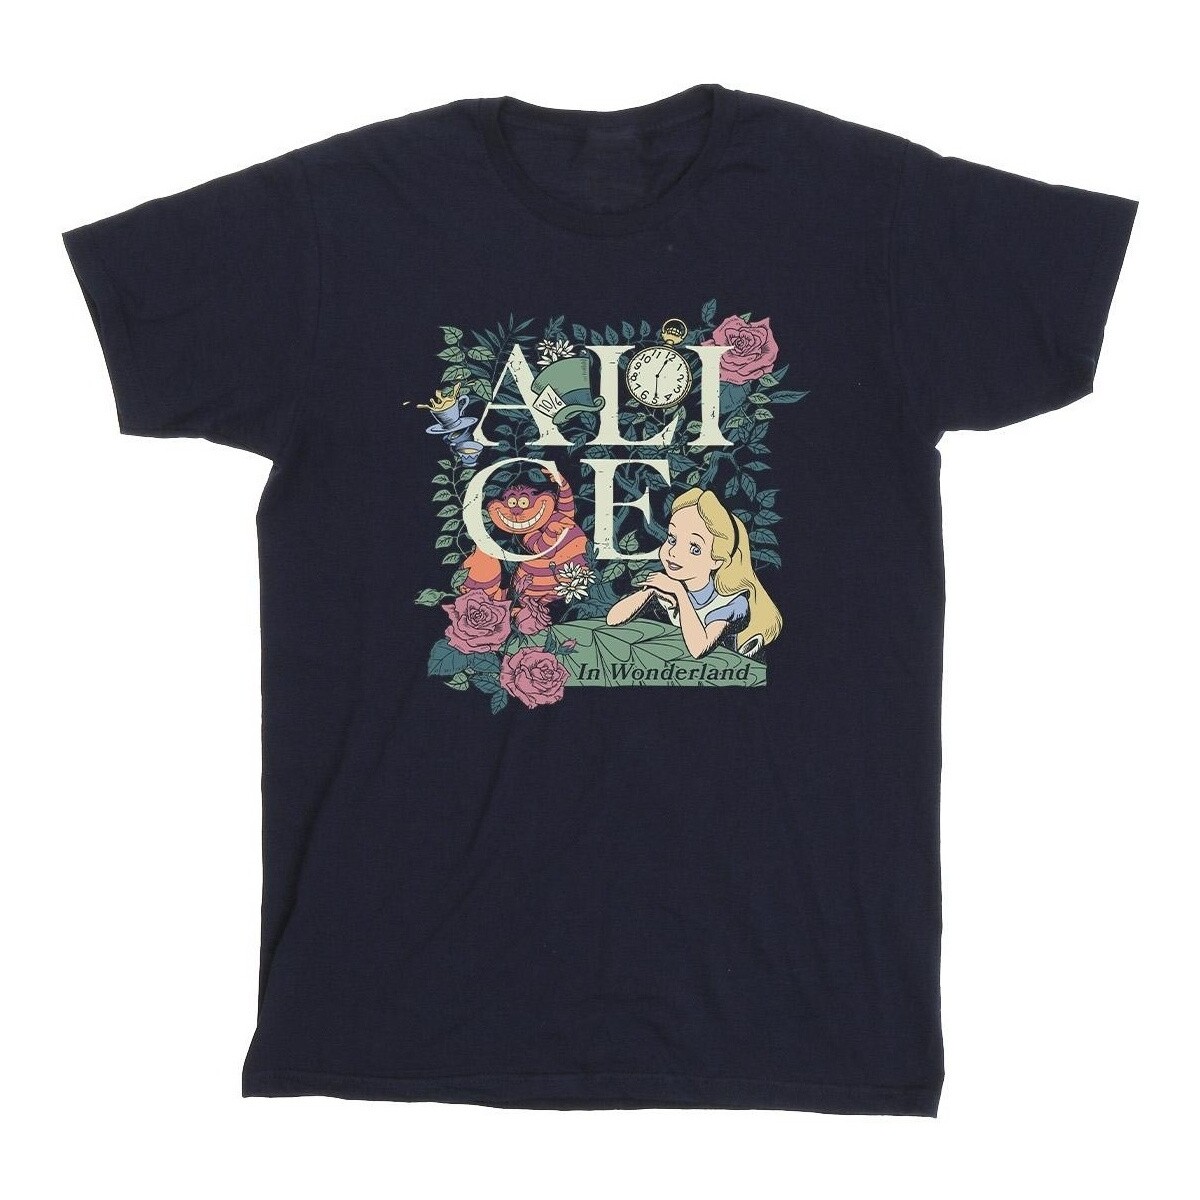 textil Niña Camisetas manga larga Disney Alice In Wonderland Leafy Garden Azul